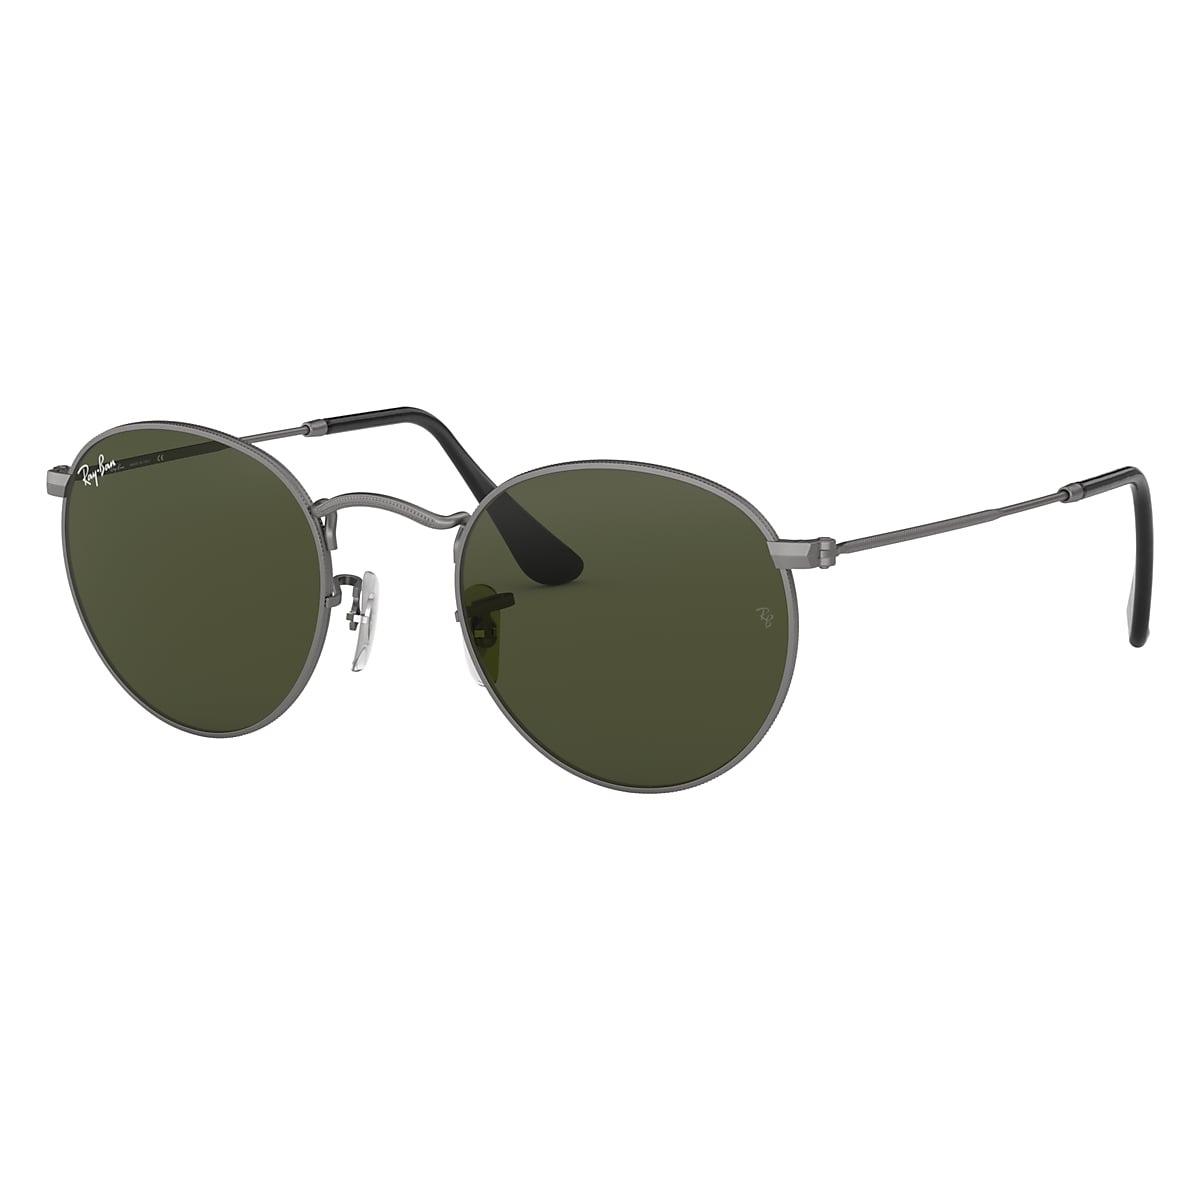 Toegangsprijs Pebish gevolgtrekking Round Metal Sunglasses in Gunmetal and Green | Ray-Ban®